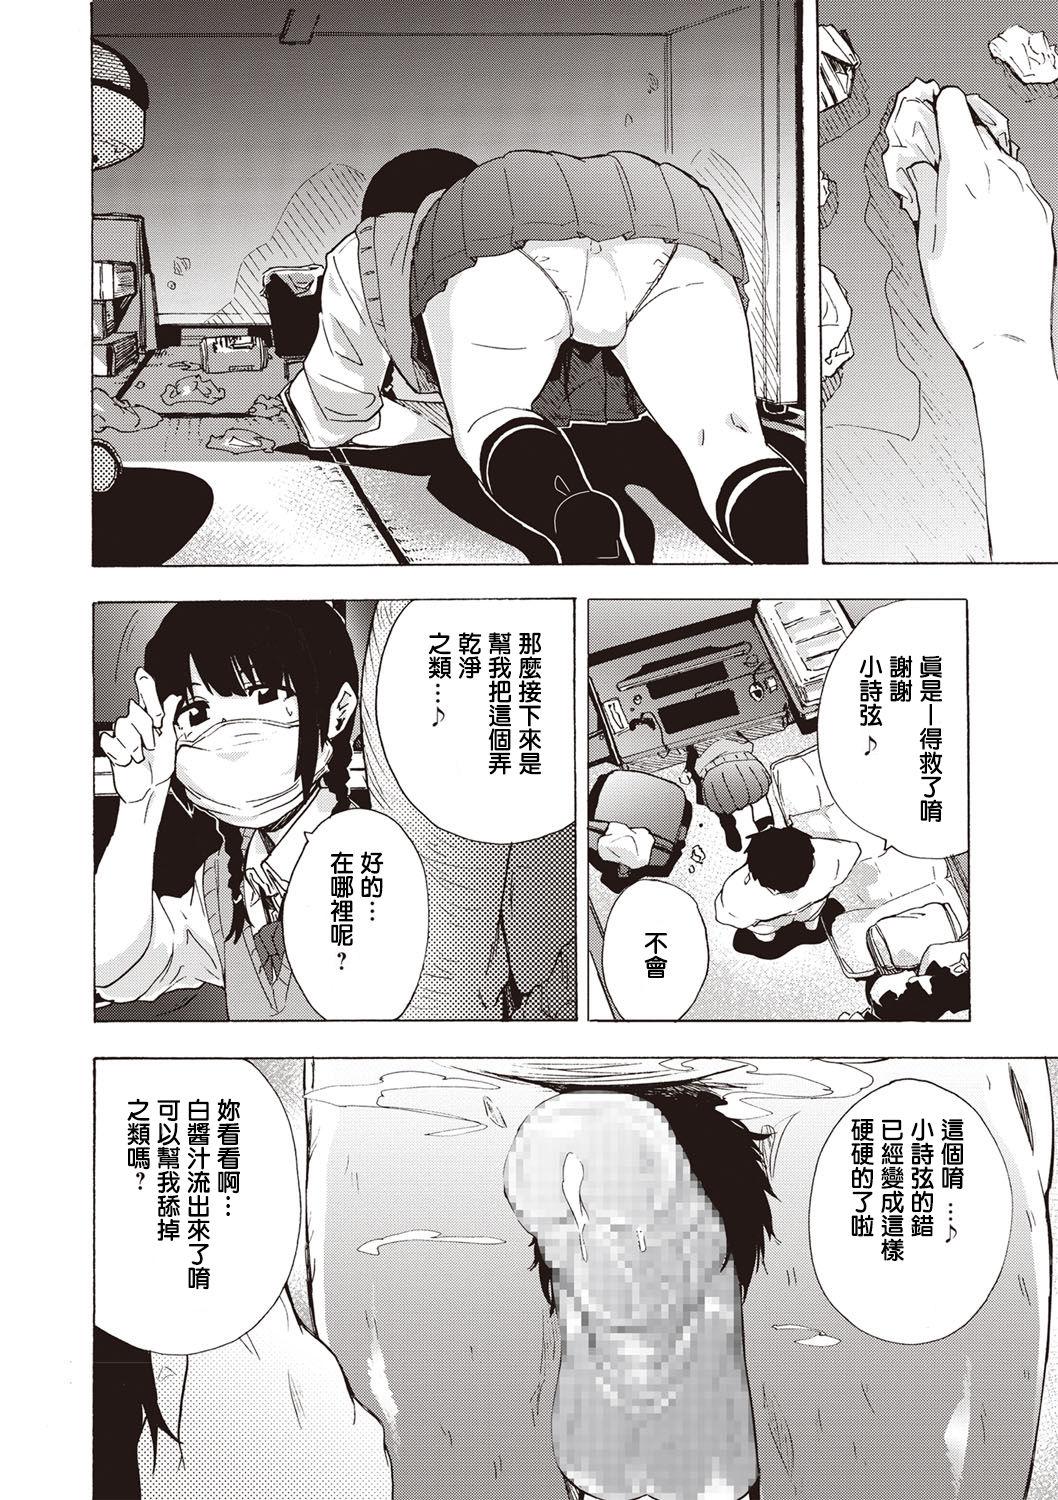 Homemade MASK Anime - Page 10